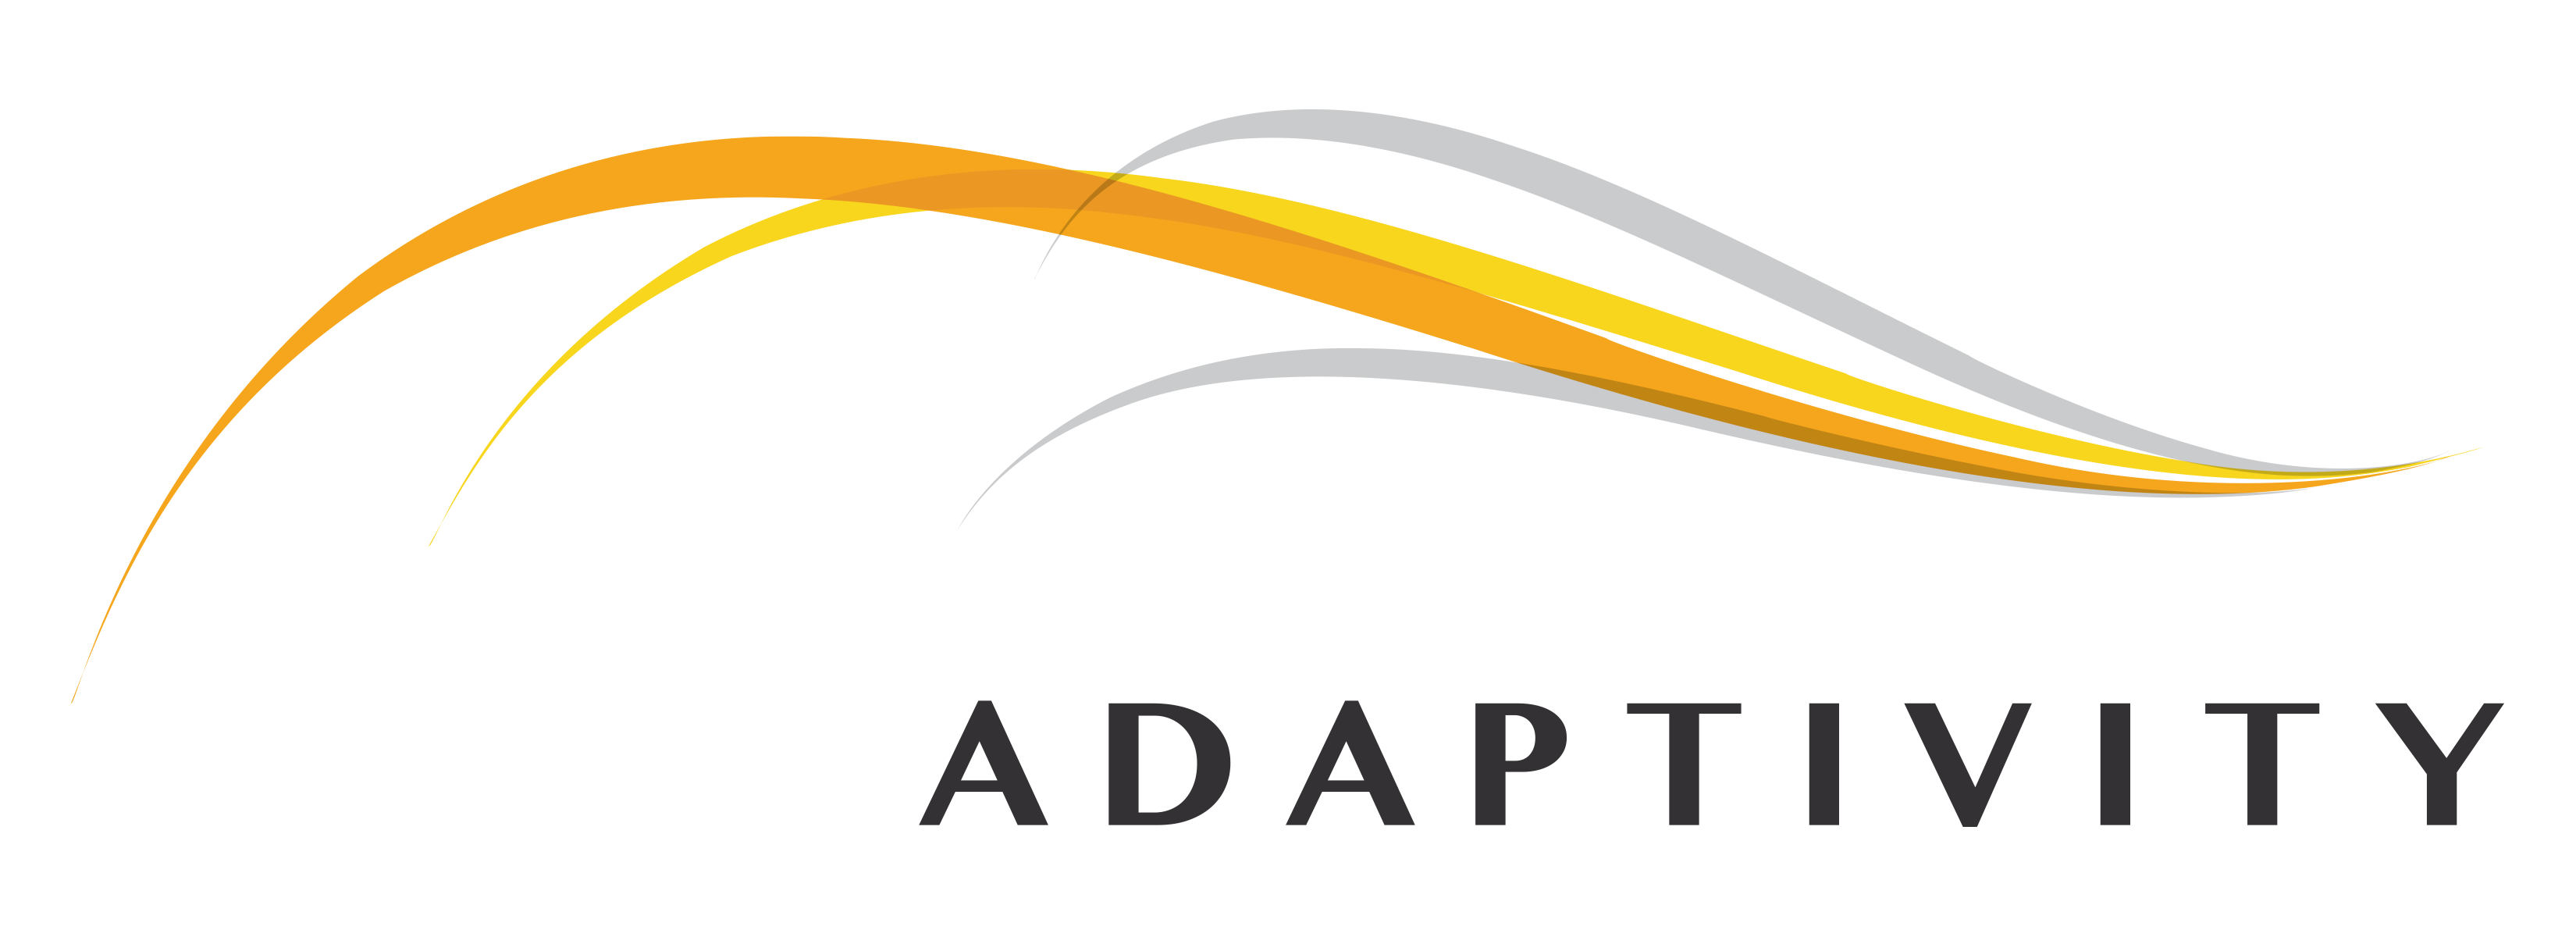 adaptivity_Logo_COLOR_HI_RES.png